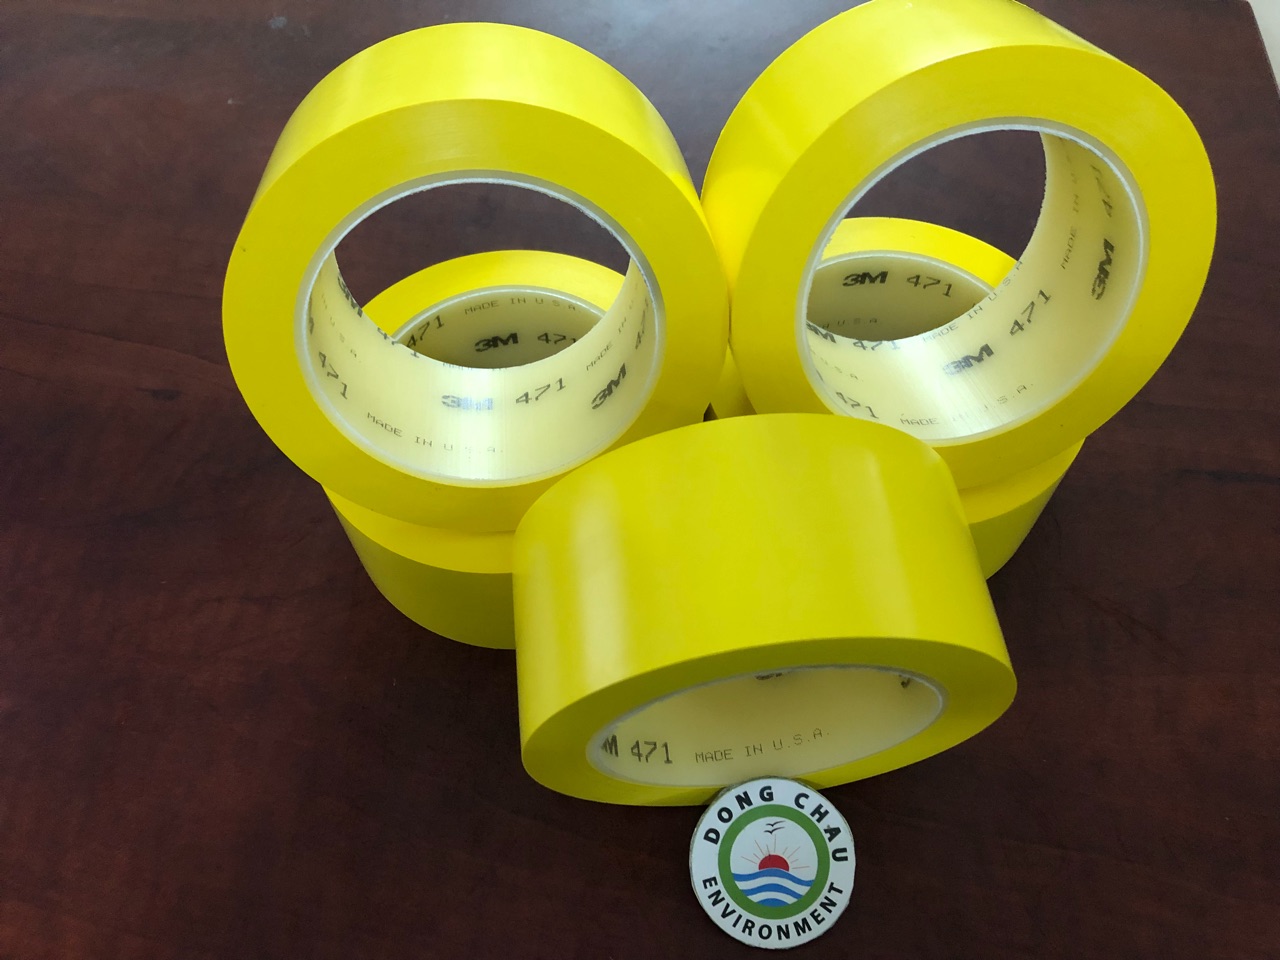 Băng keo nền màu vàng 3M Vinyl 471 chất lượng cao 2024:
Sản phẩm băng keo nền màu vàng 3M Vinyl 471 chất lượng cao 2024 từ thương hiệu danh tiếng 3M sẽ mang đến cho bạn một trải nghiệm hoàn toàn mới khi sử dụng băng keo dán nền cho các công trình của mình. Sản phẩm này có độ bám dính vượt trội, độ bền cao và khả năng chống ẩm mốc hiệu quả.